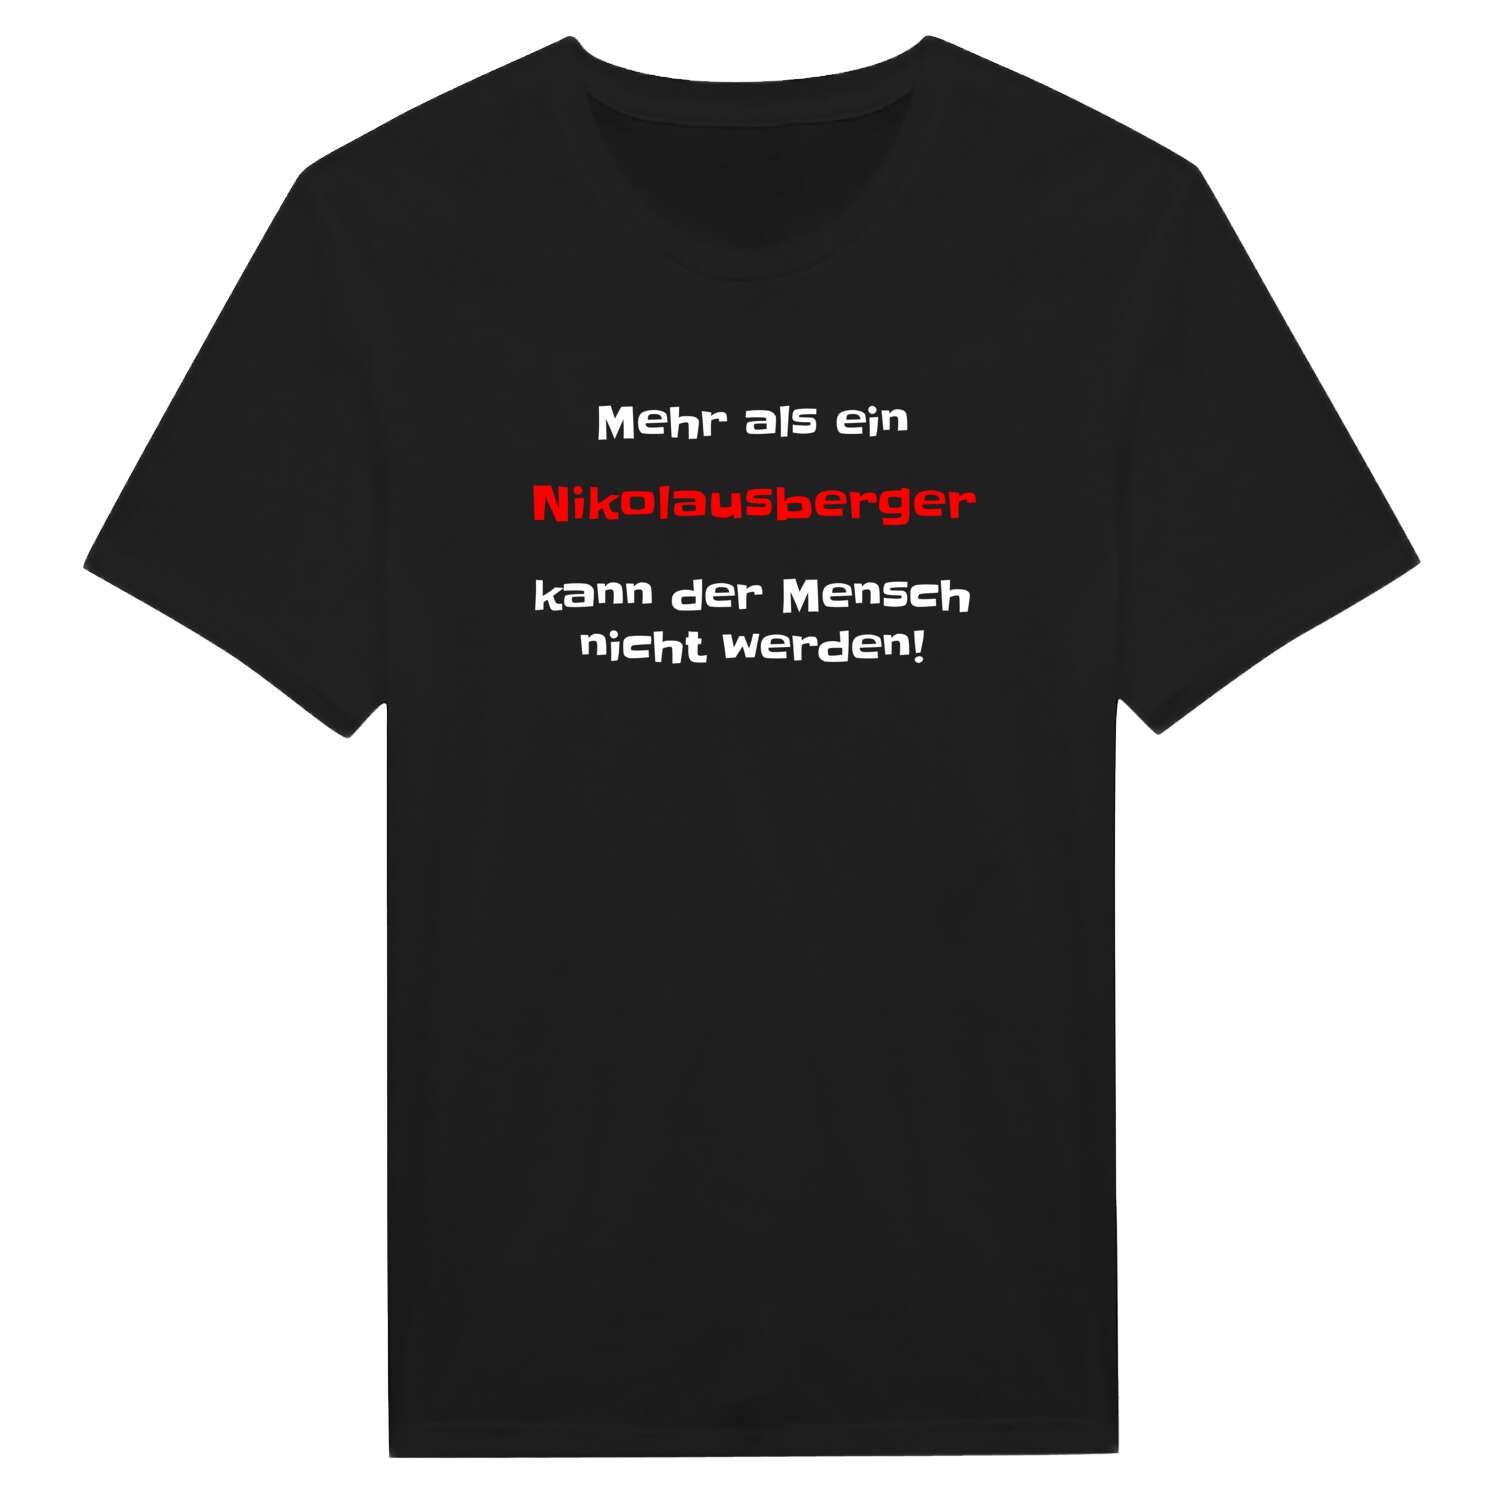 Nikolausberg T-Shirt »Mehr als ein«